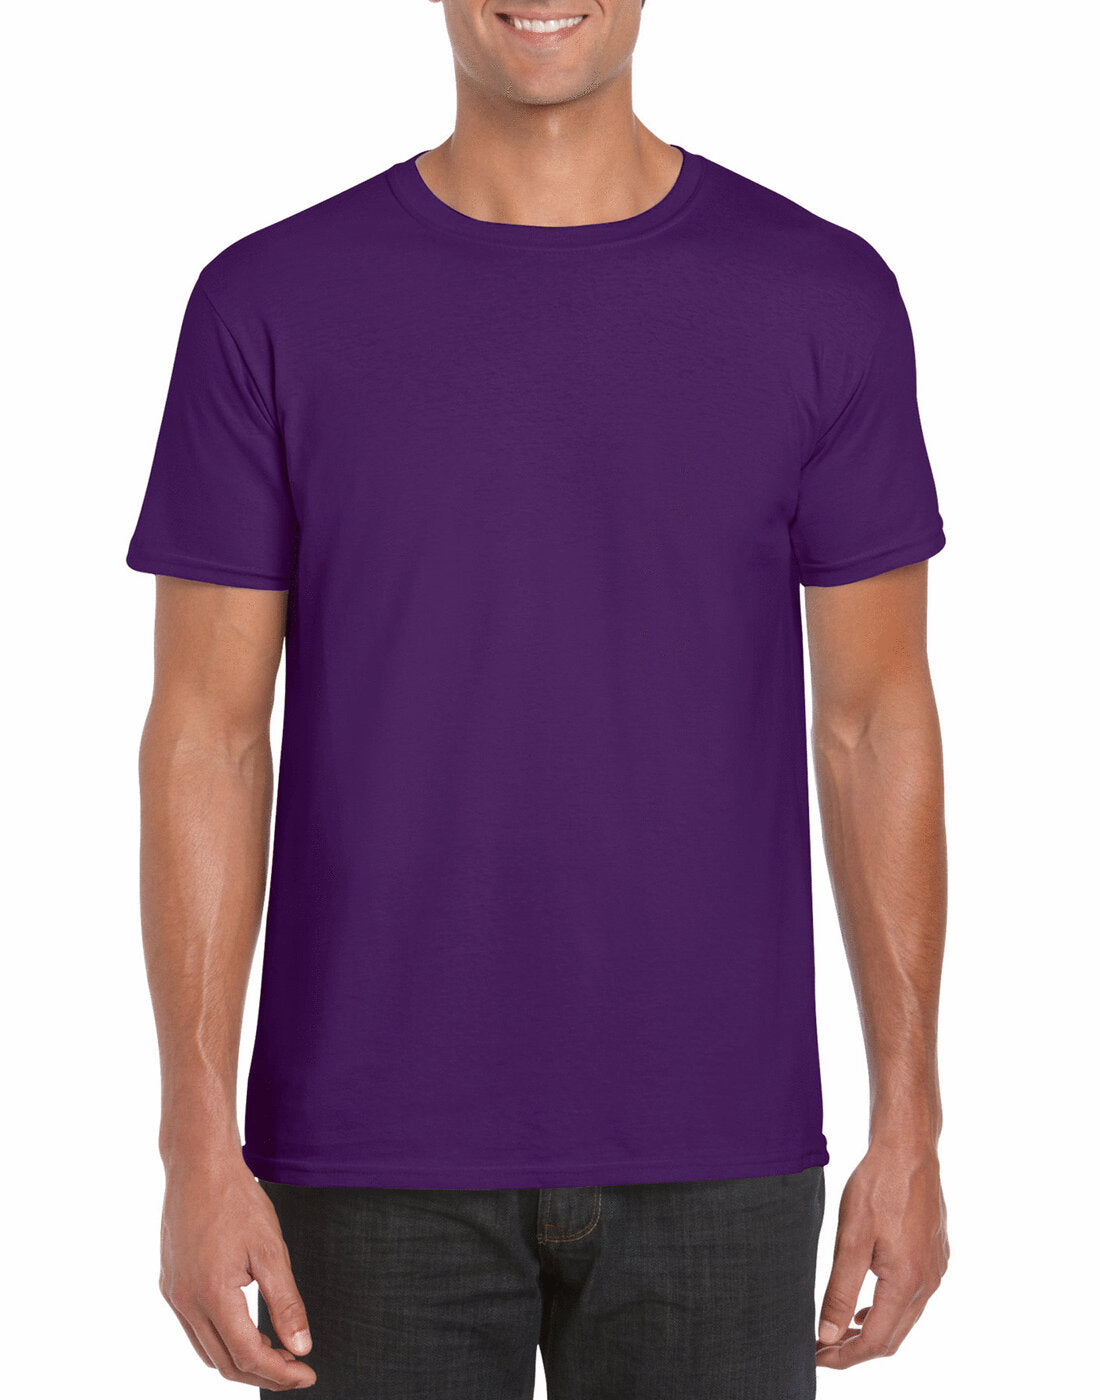 Gildan Adult Softstyle Ringspun T-Shirt - GD01 (cont)